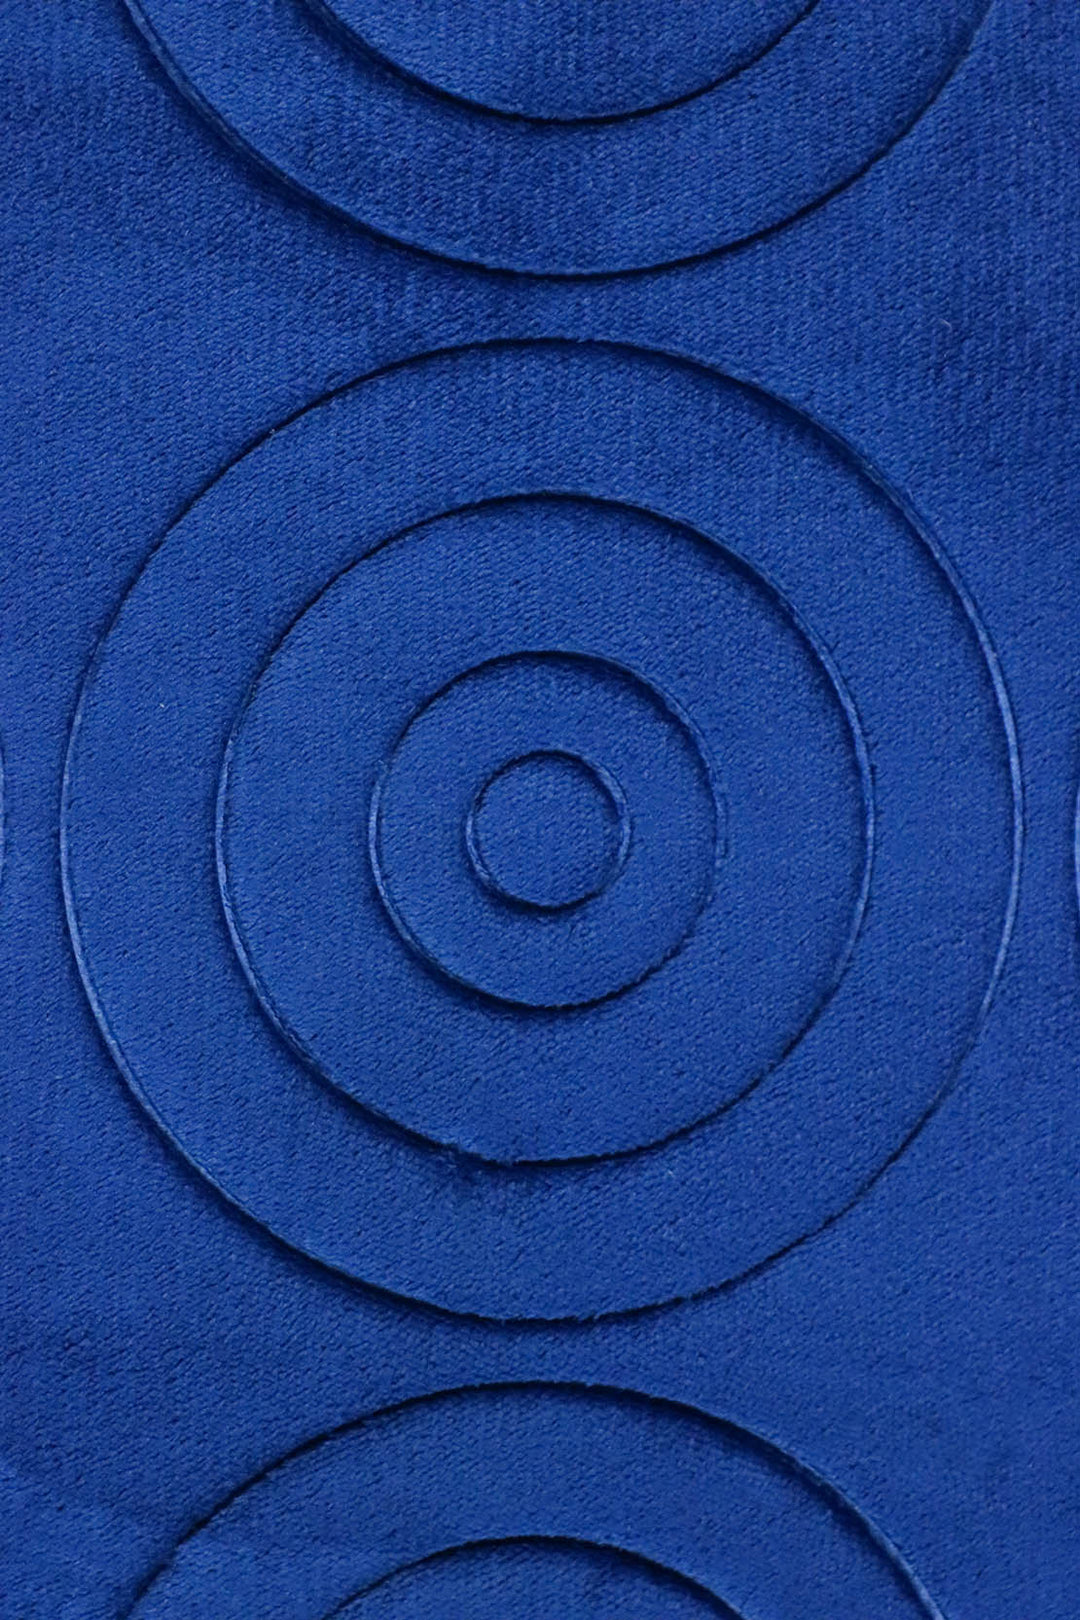 Set of Comfort Bath Mat, Blue - V Surfaces